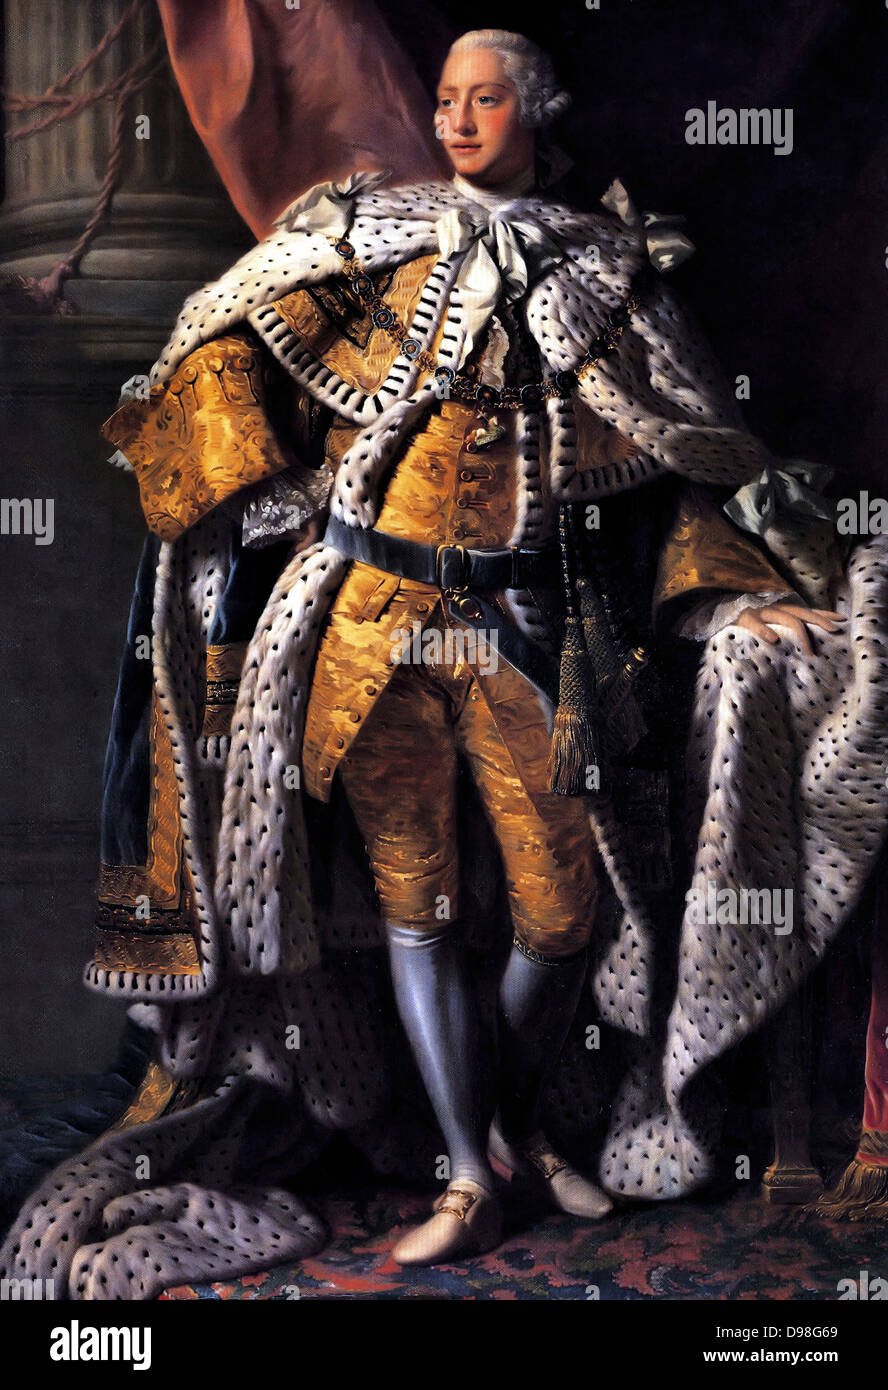 George III im Coronation Roben. George III 1738 - 1820, König von Großbritannien 1760 - 1820. Porträt von Allan Ramsay (1713 - 1784) Stockfoto